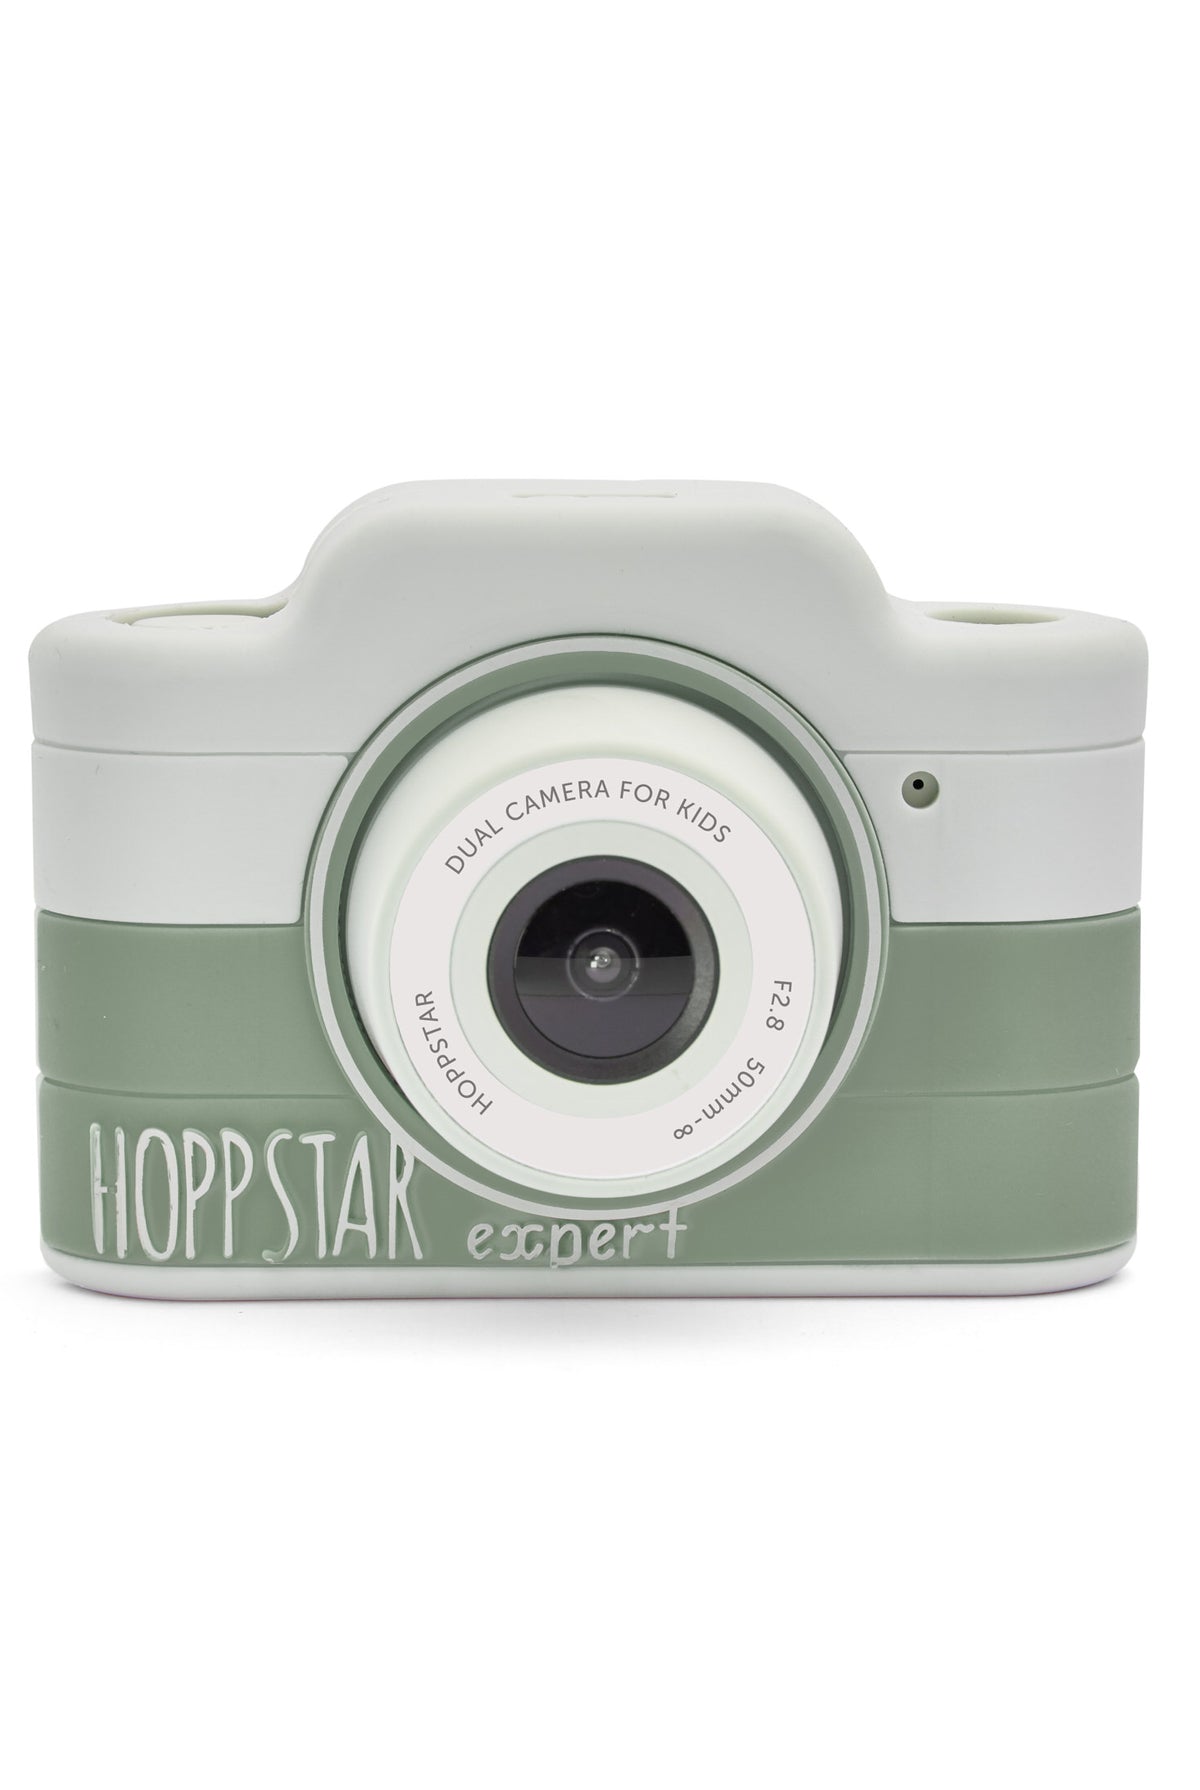 Hoppstar Expert Laurel Digital Camera